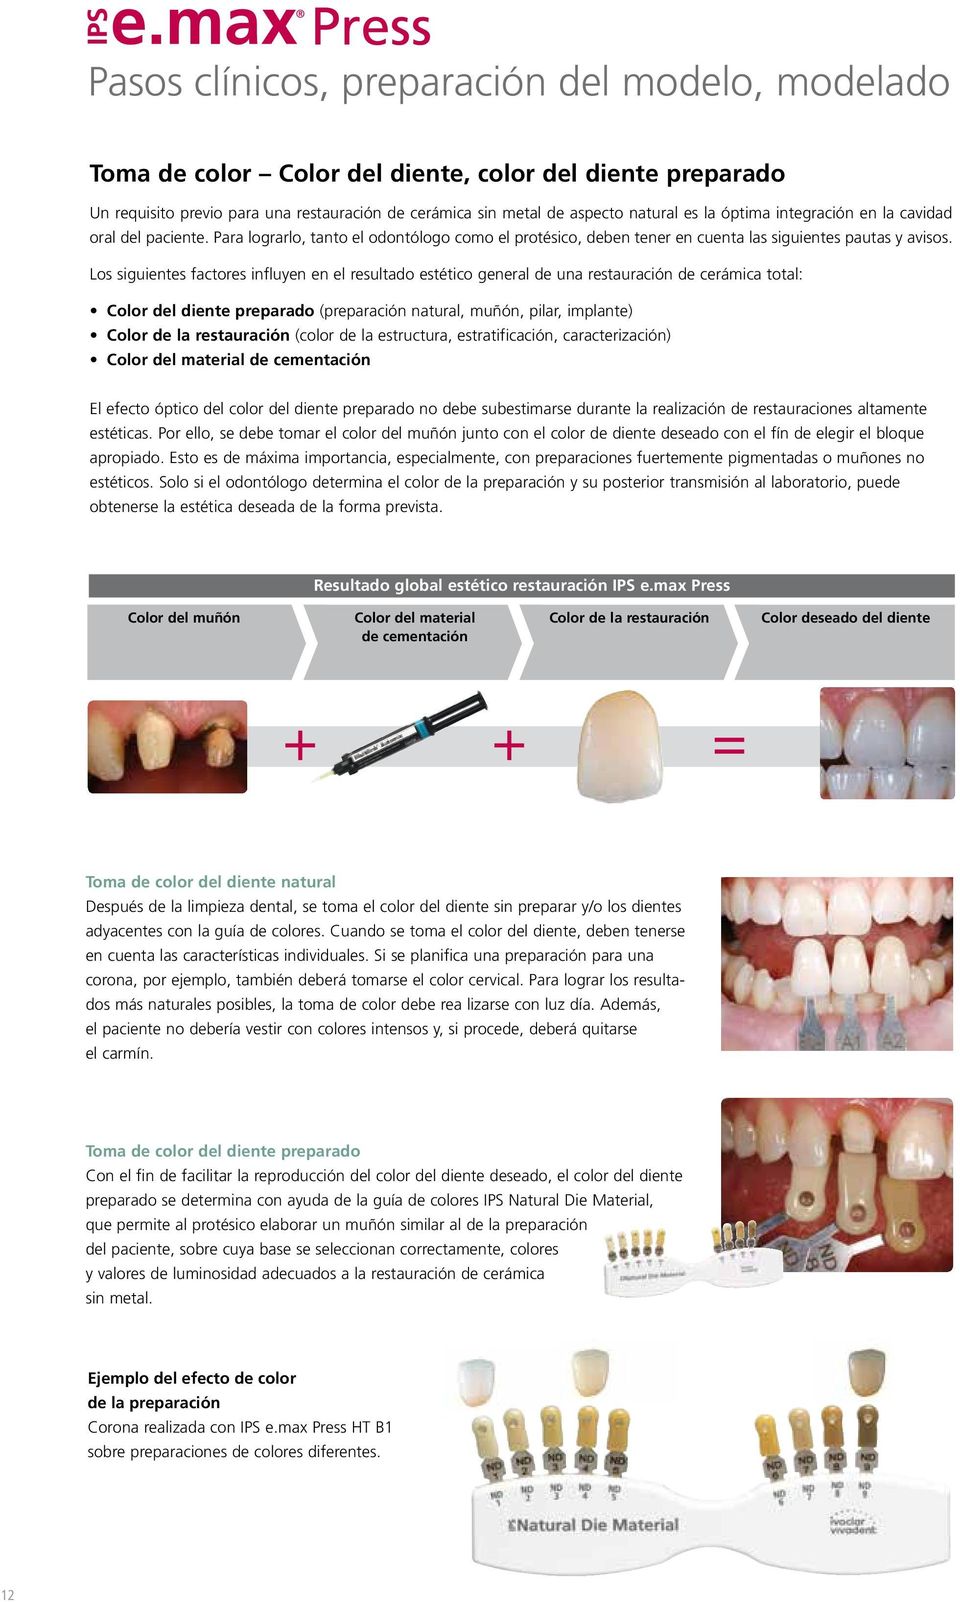 Los siguientes factores influyen en el resultado estético general de una restauración de cerámica total: Color del diente preparado (preparación natural, muñón, pilar, implante) Color de la